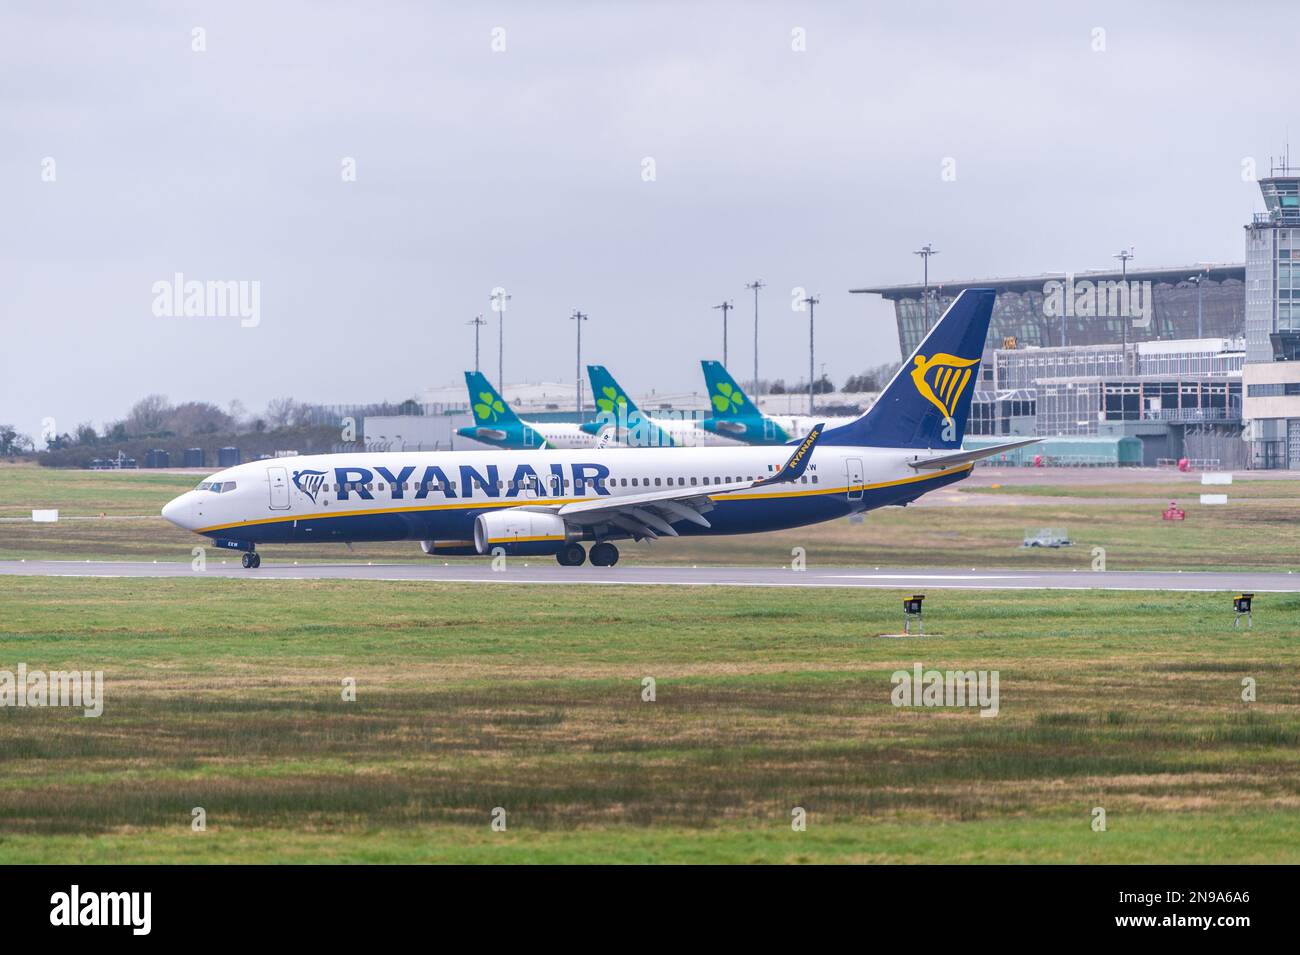 Cork, Irland. 12. Februar 2023. Ryanair Flug FR7722 von London Gatwick landet am Flughafen Cork inmitten eines Drohnenproblems auf irischen Flughäfen. Vor kurzem wurde ein Mann wegen 'Störung des Flugbetriebs' angeklagt, nachdem am 24. Januar in der Nähe des Flughafens Dublin eine Drohne geflogen wurde, wodurch der Flugbetrieb für eine halbe Stunde ausgesetzt wurde. Kredit: AG News/Alamy Live News Stockfoto